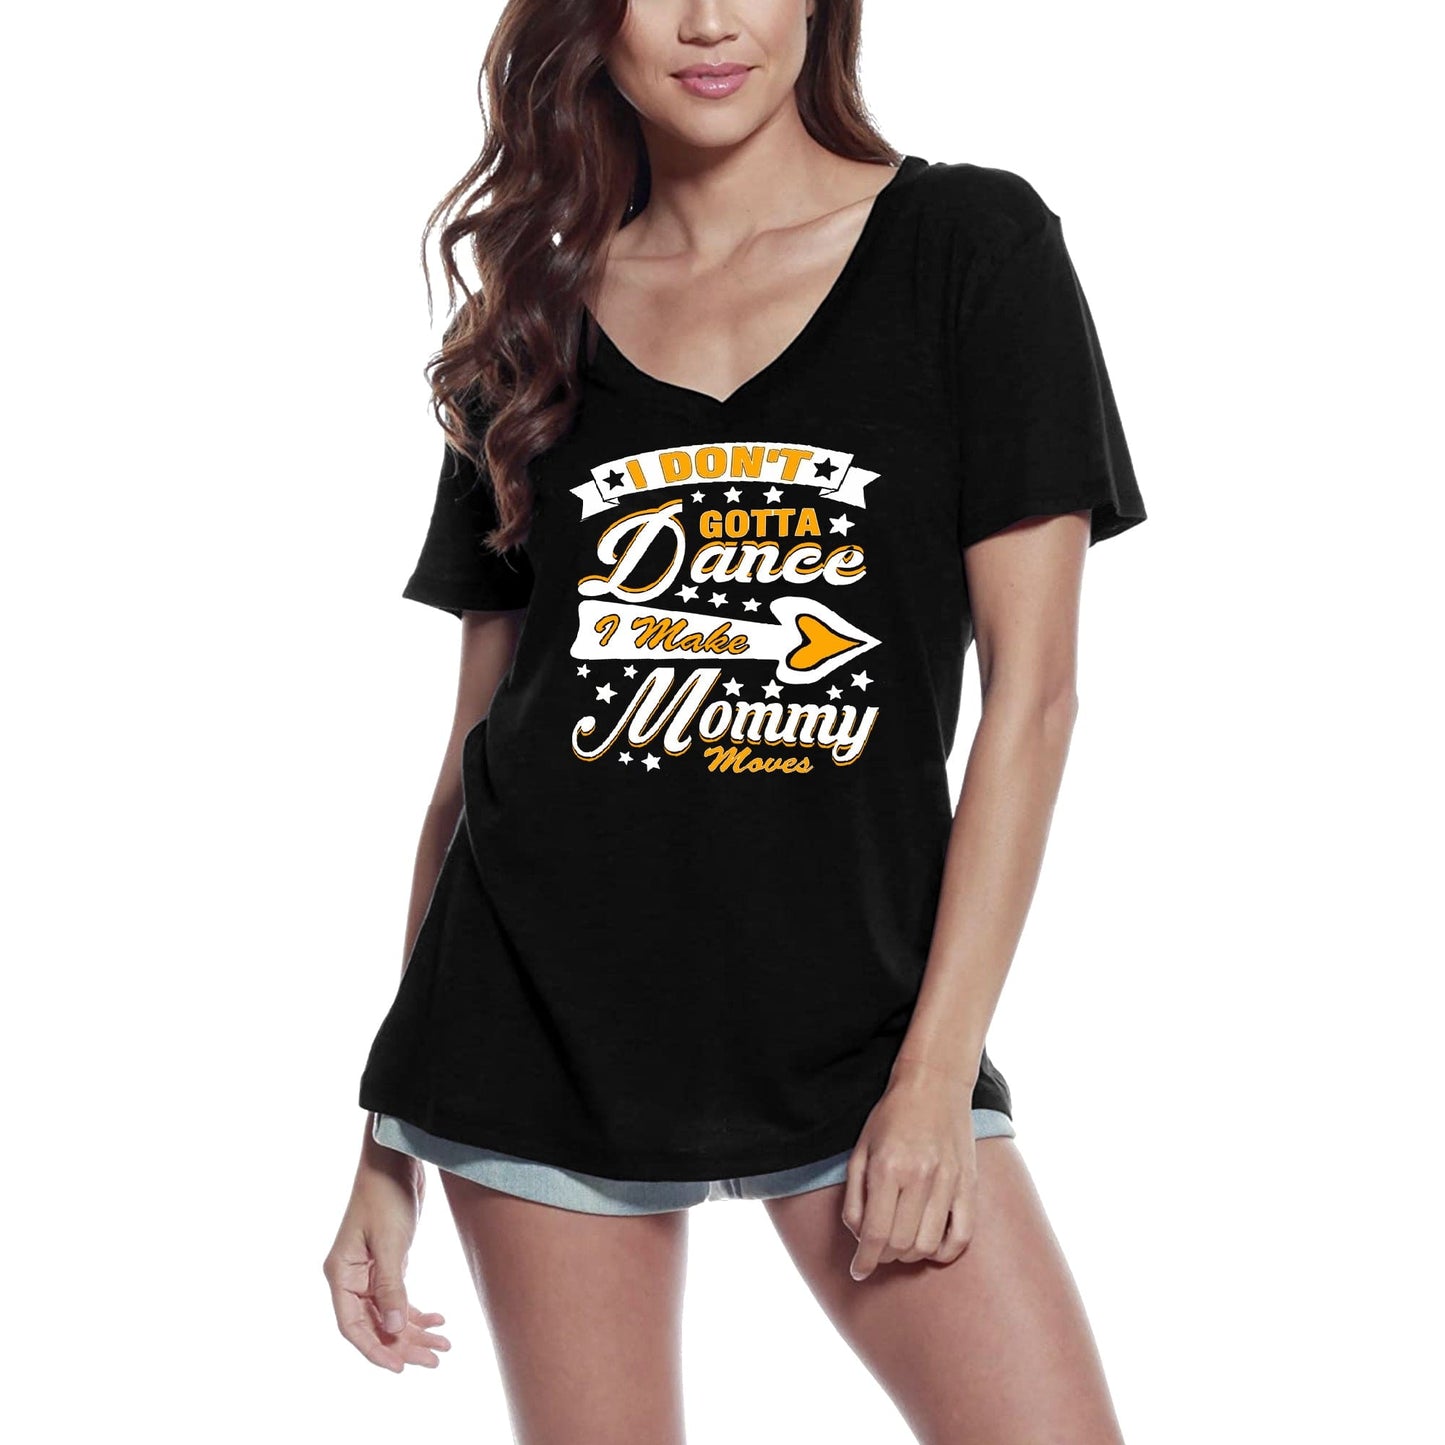 ULTRABASIC Women's T-Shirt I Make Mommy Moves - Funny Dance Mother Short Sleeve Tee Shirt Tops